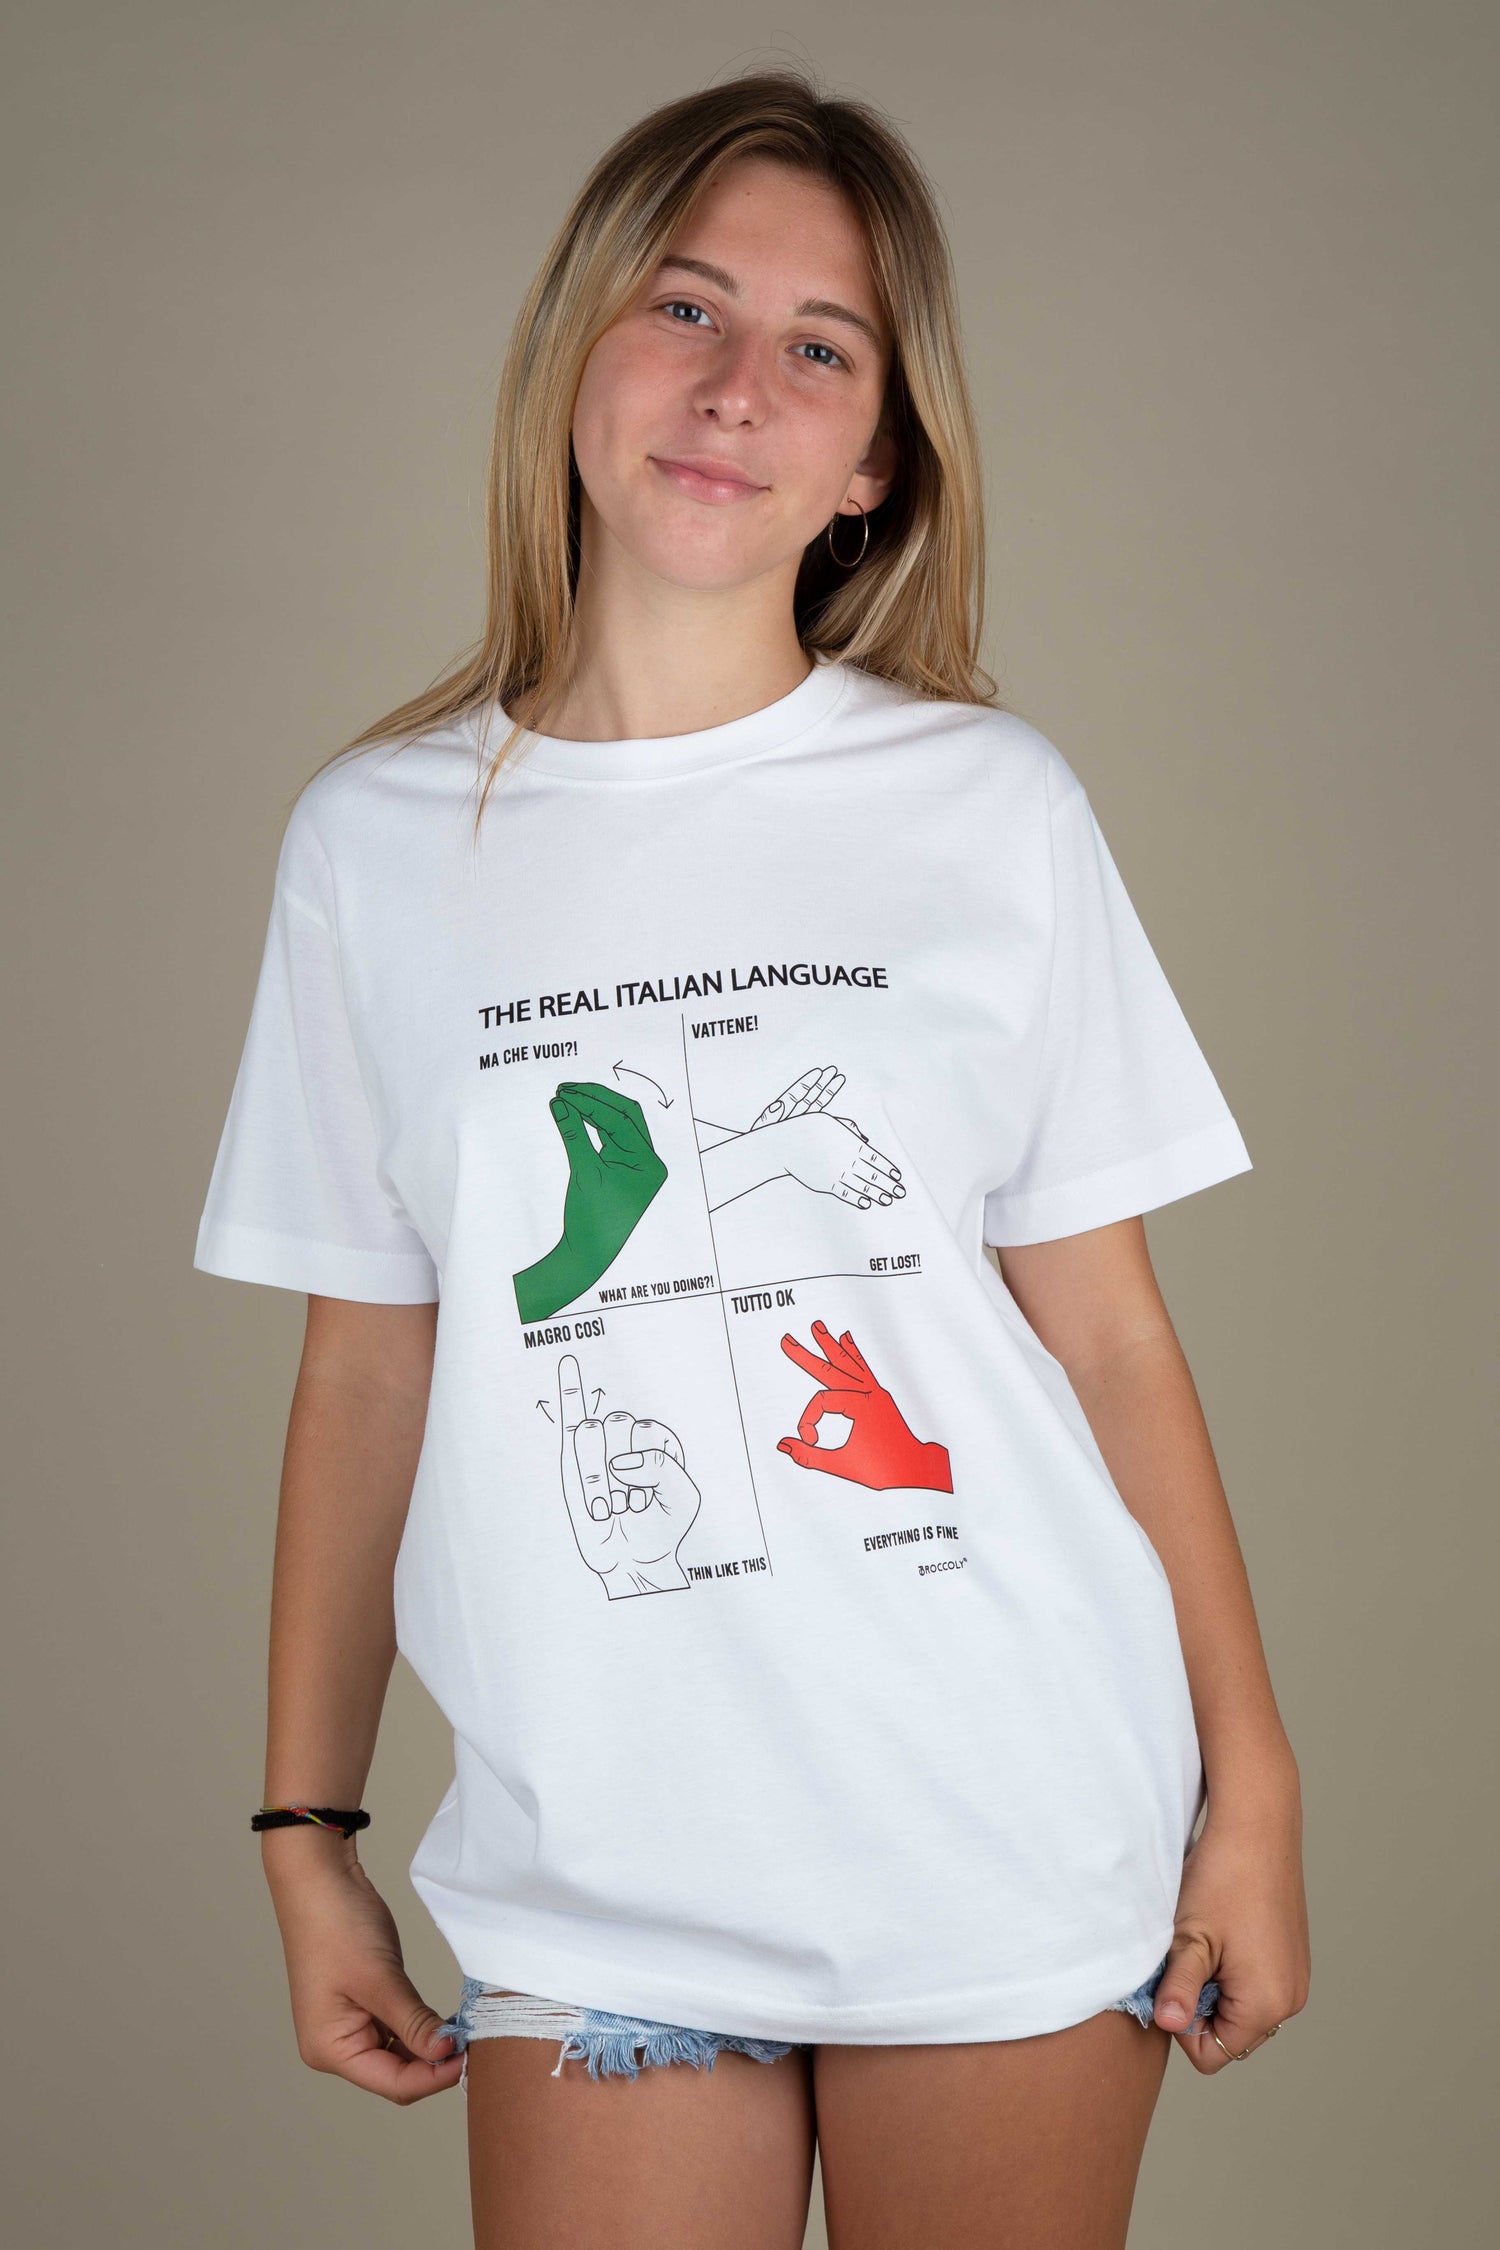 Parla Italiano con le Mani: La T-Shirt che Celebra l'Anima dell'Italia